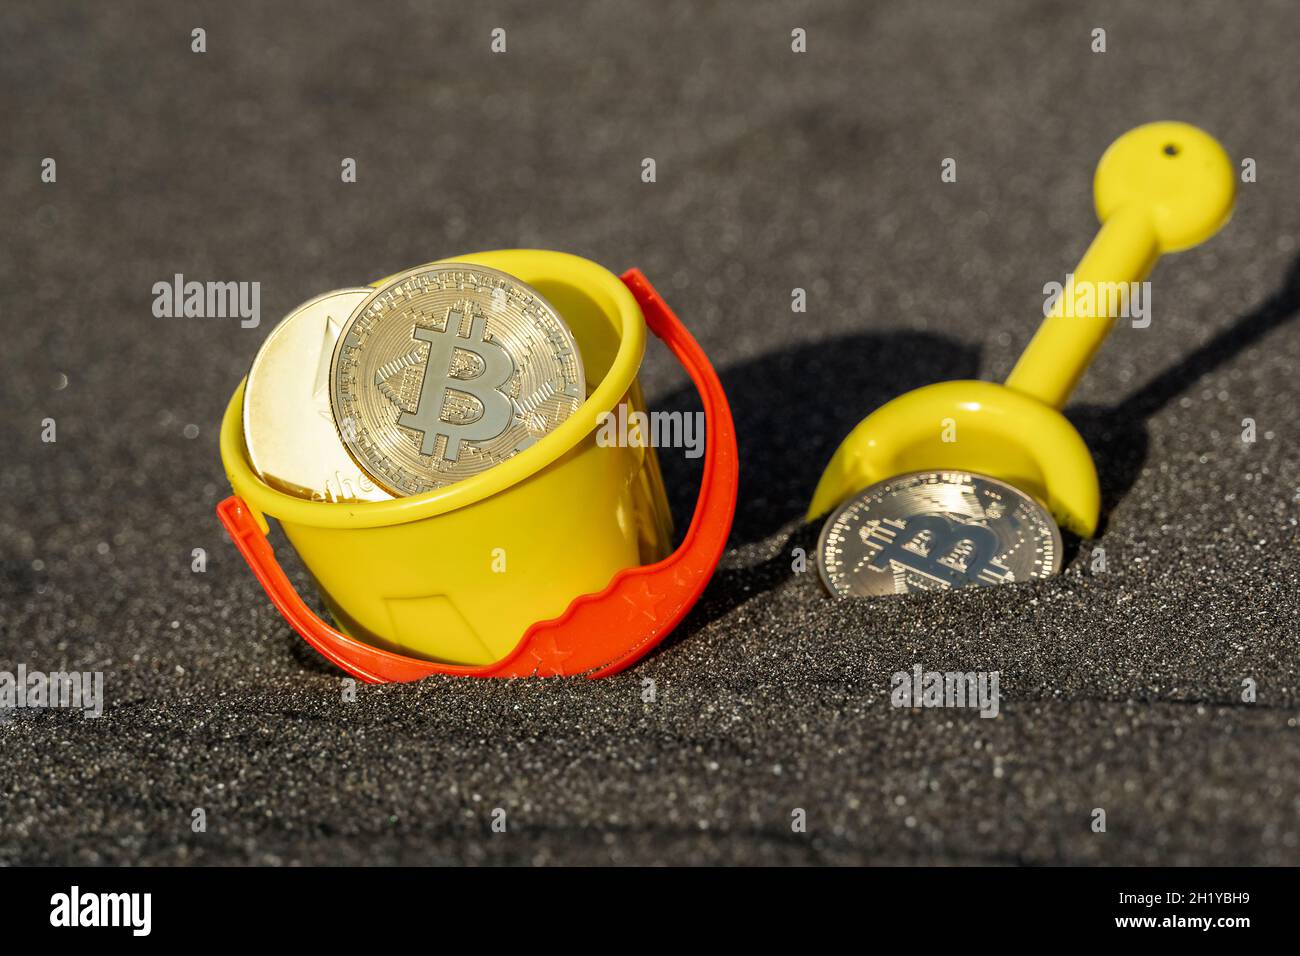 Monete delle valute digitali Bitcoin ed Ethereum con secchio e pala nella sabbia Foto Stock